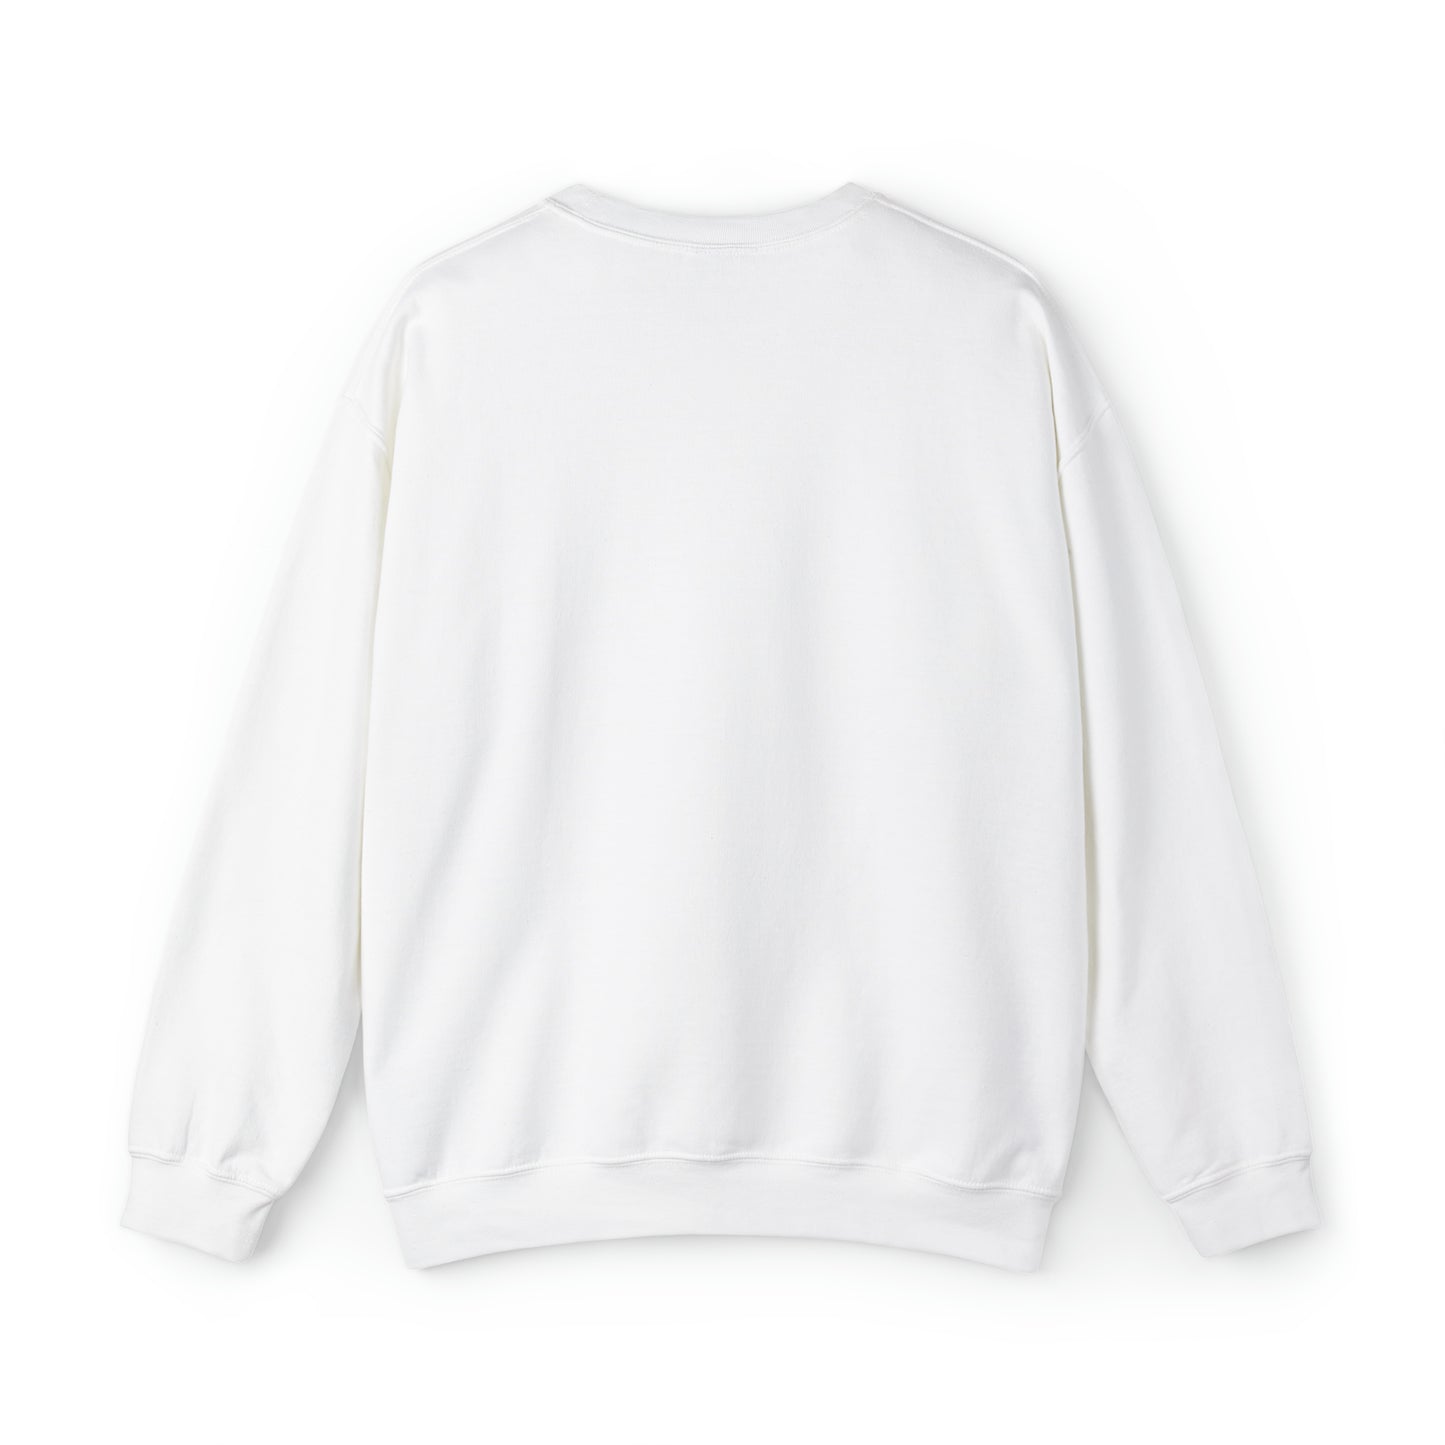 Sweatshirt:  Quilter Crewneck Sweatshirt